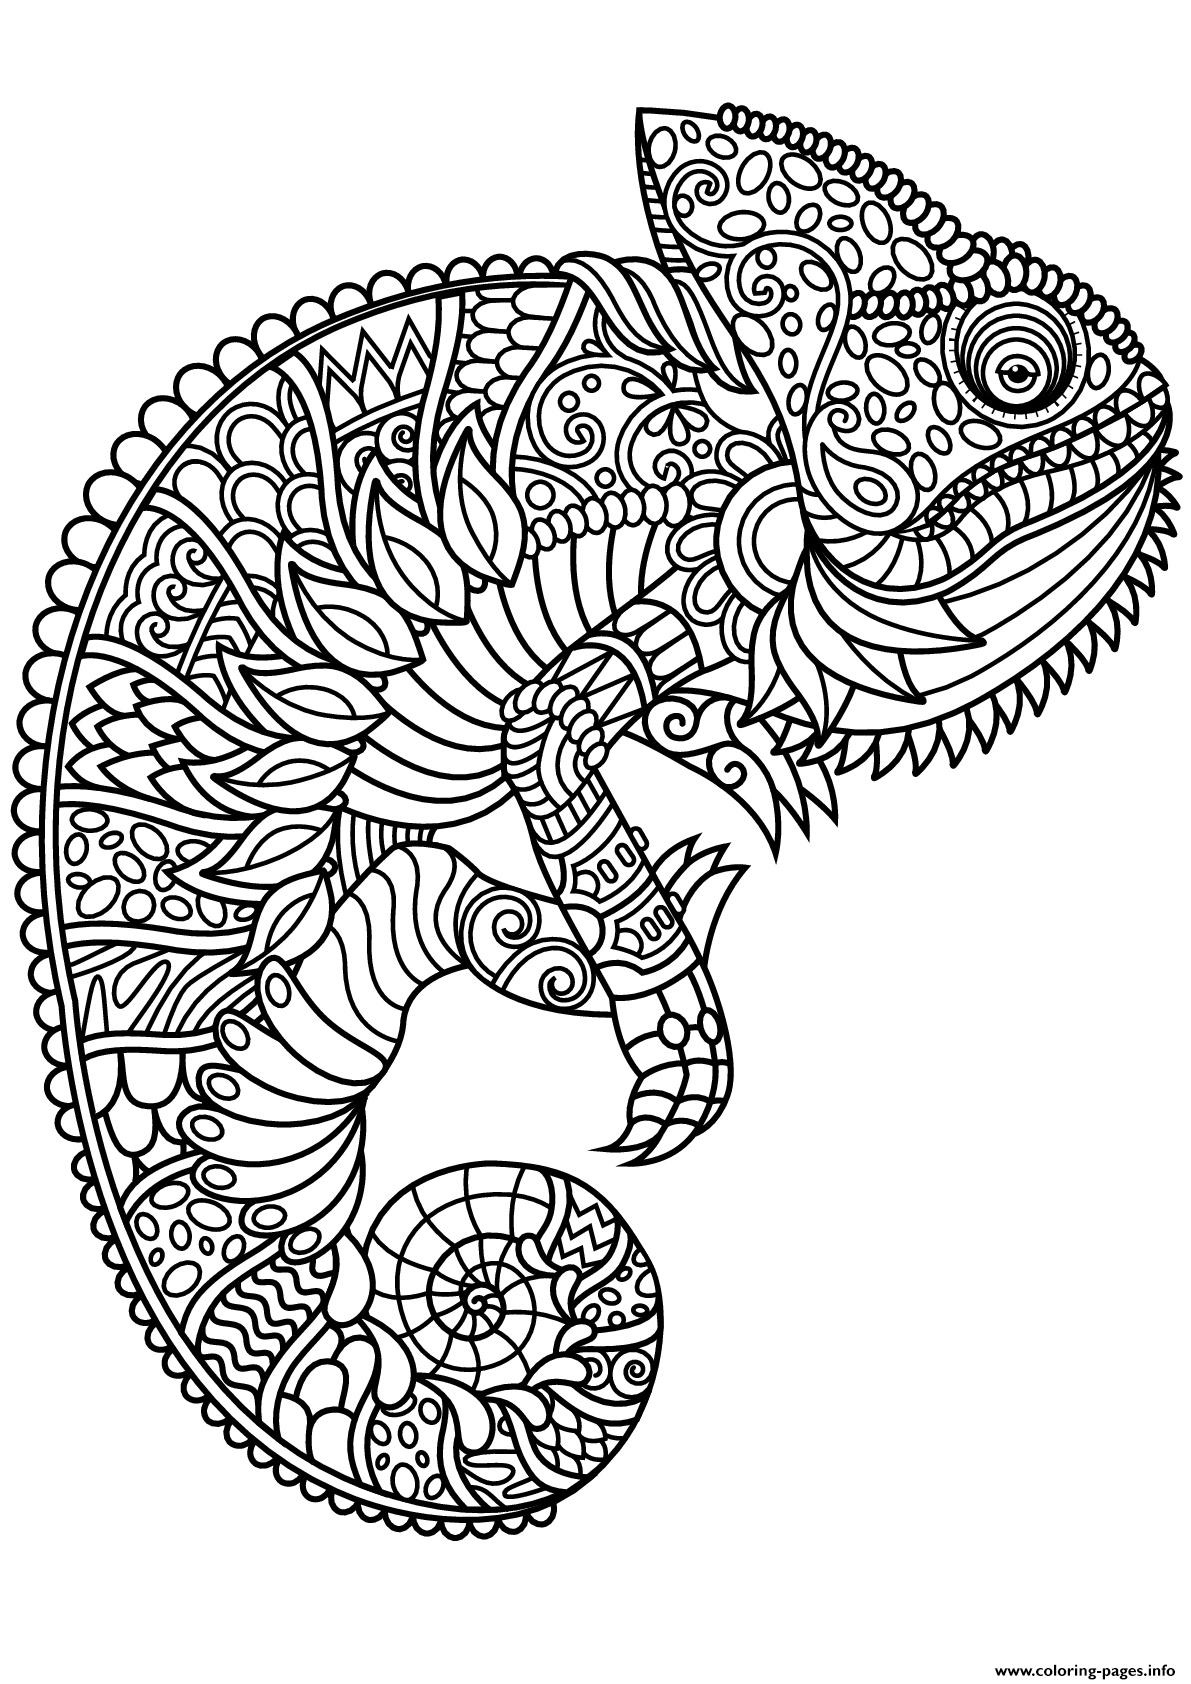 Mandala Chameleon Animal Coloring Page Printable